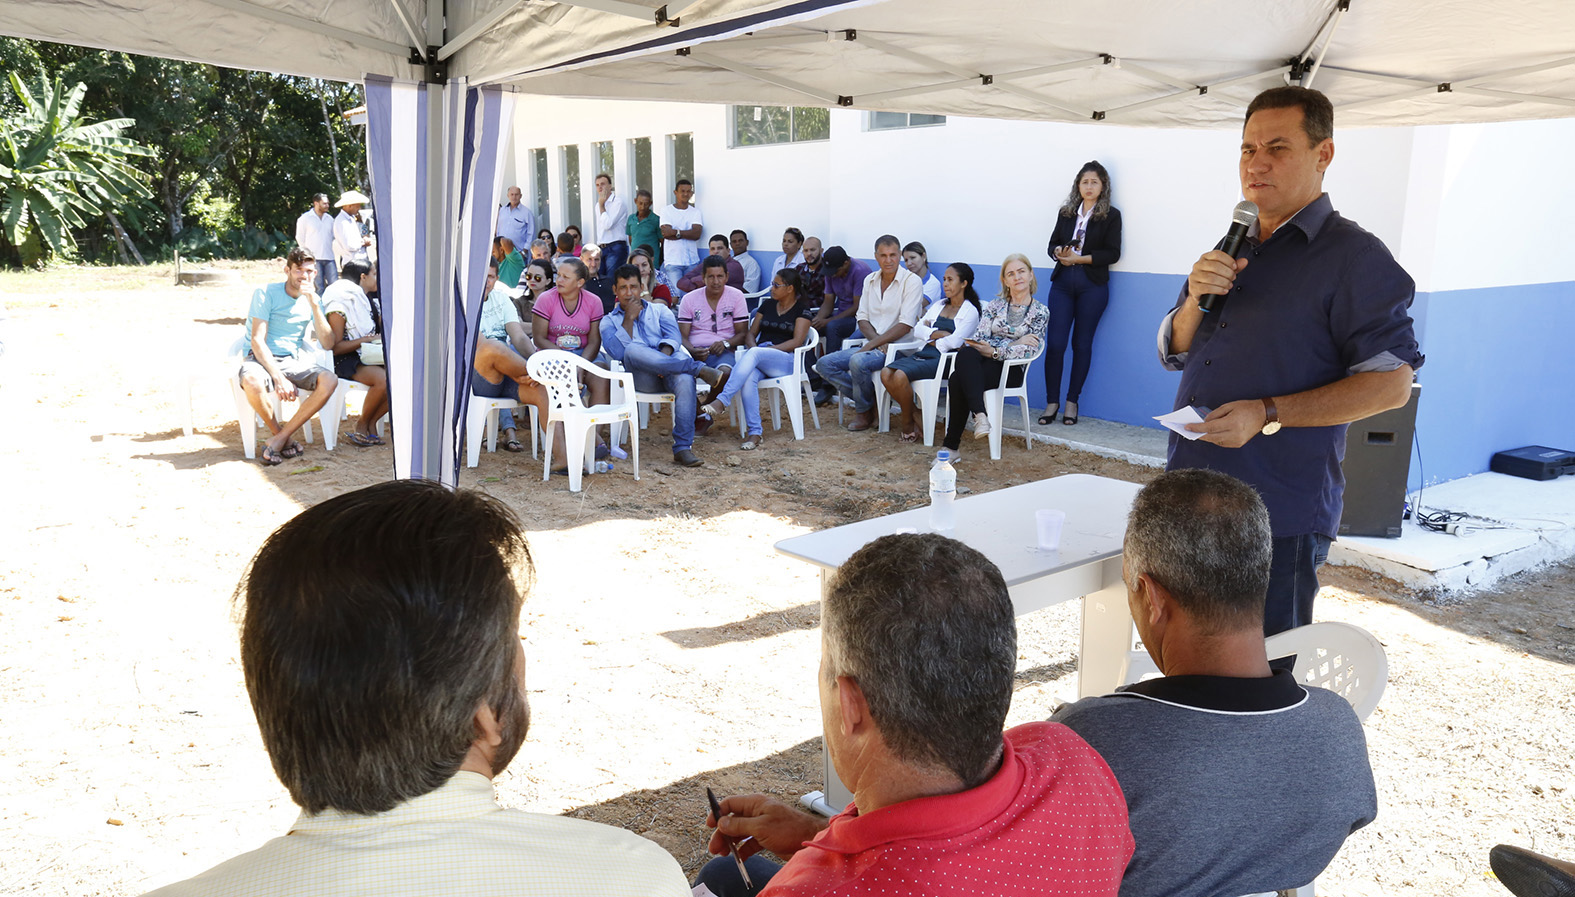 Maurão de Carvalho participa de inauguração de Unidade Básica de Saúde em Cujubim